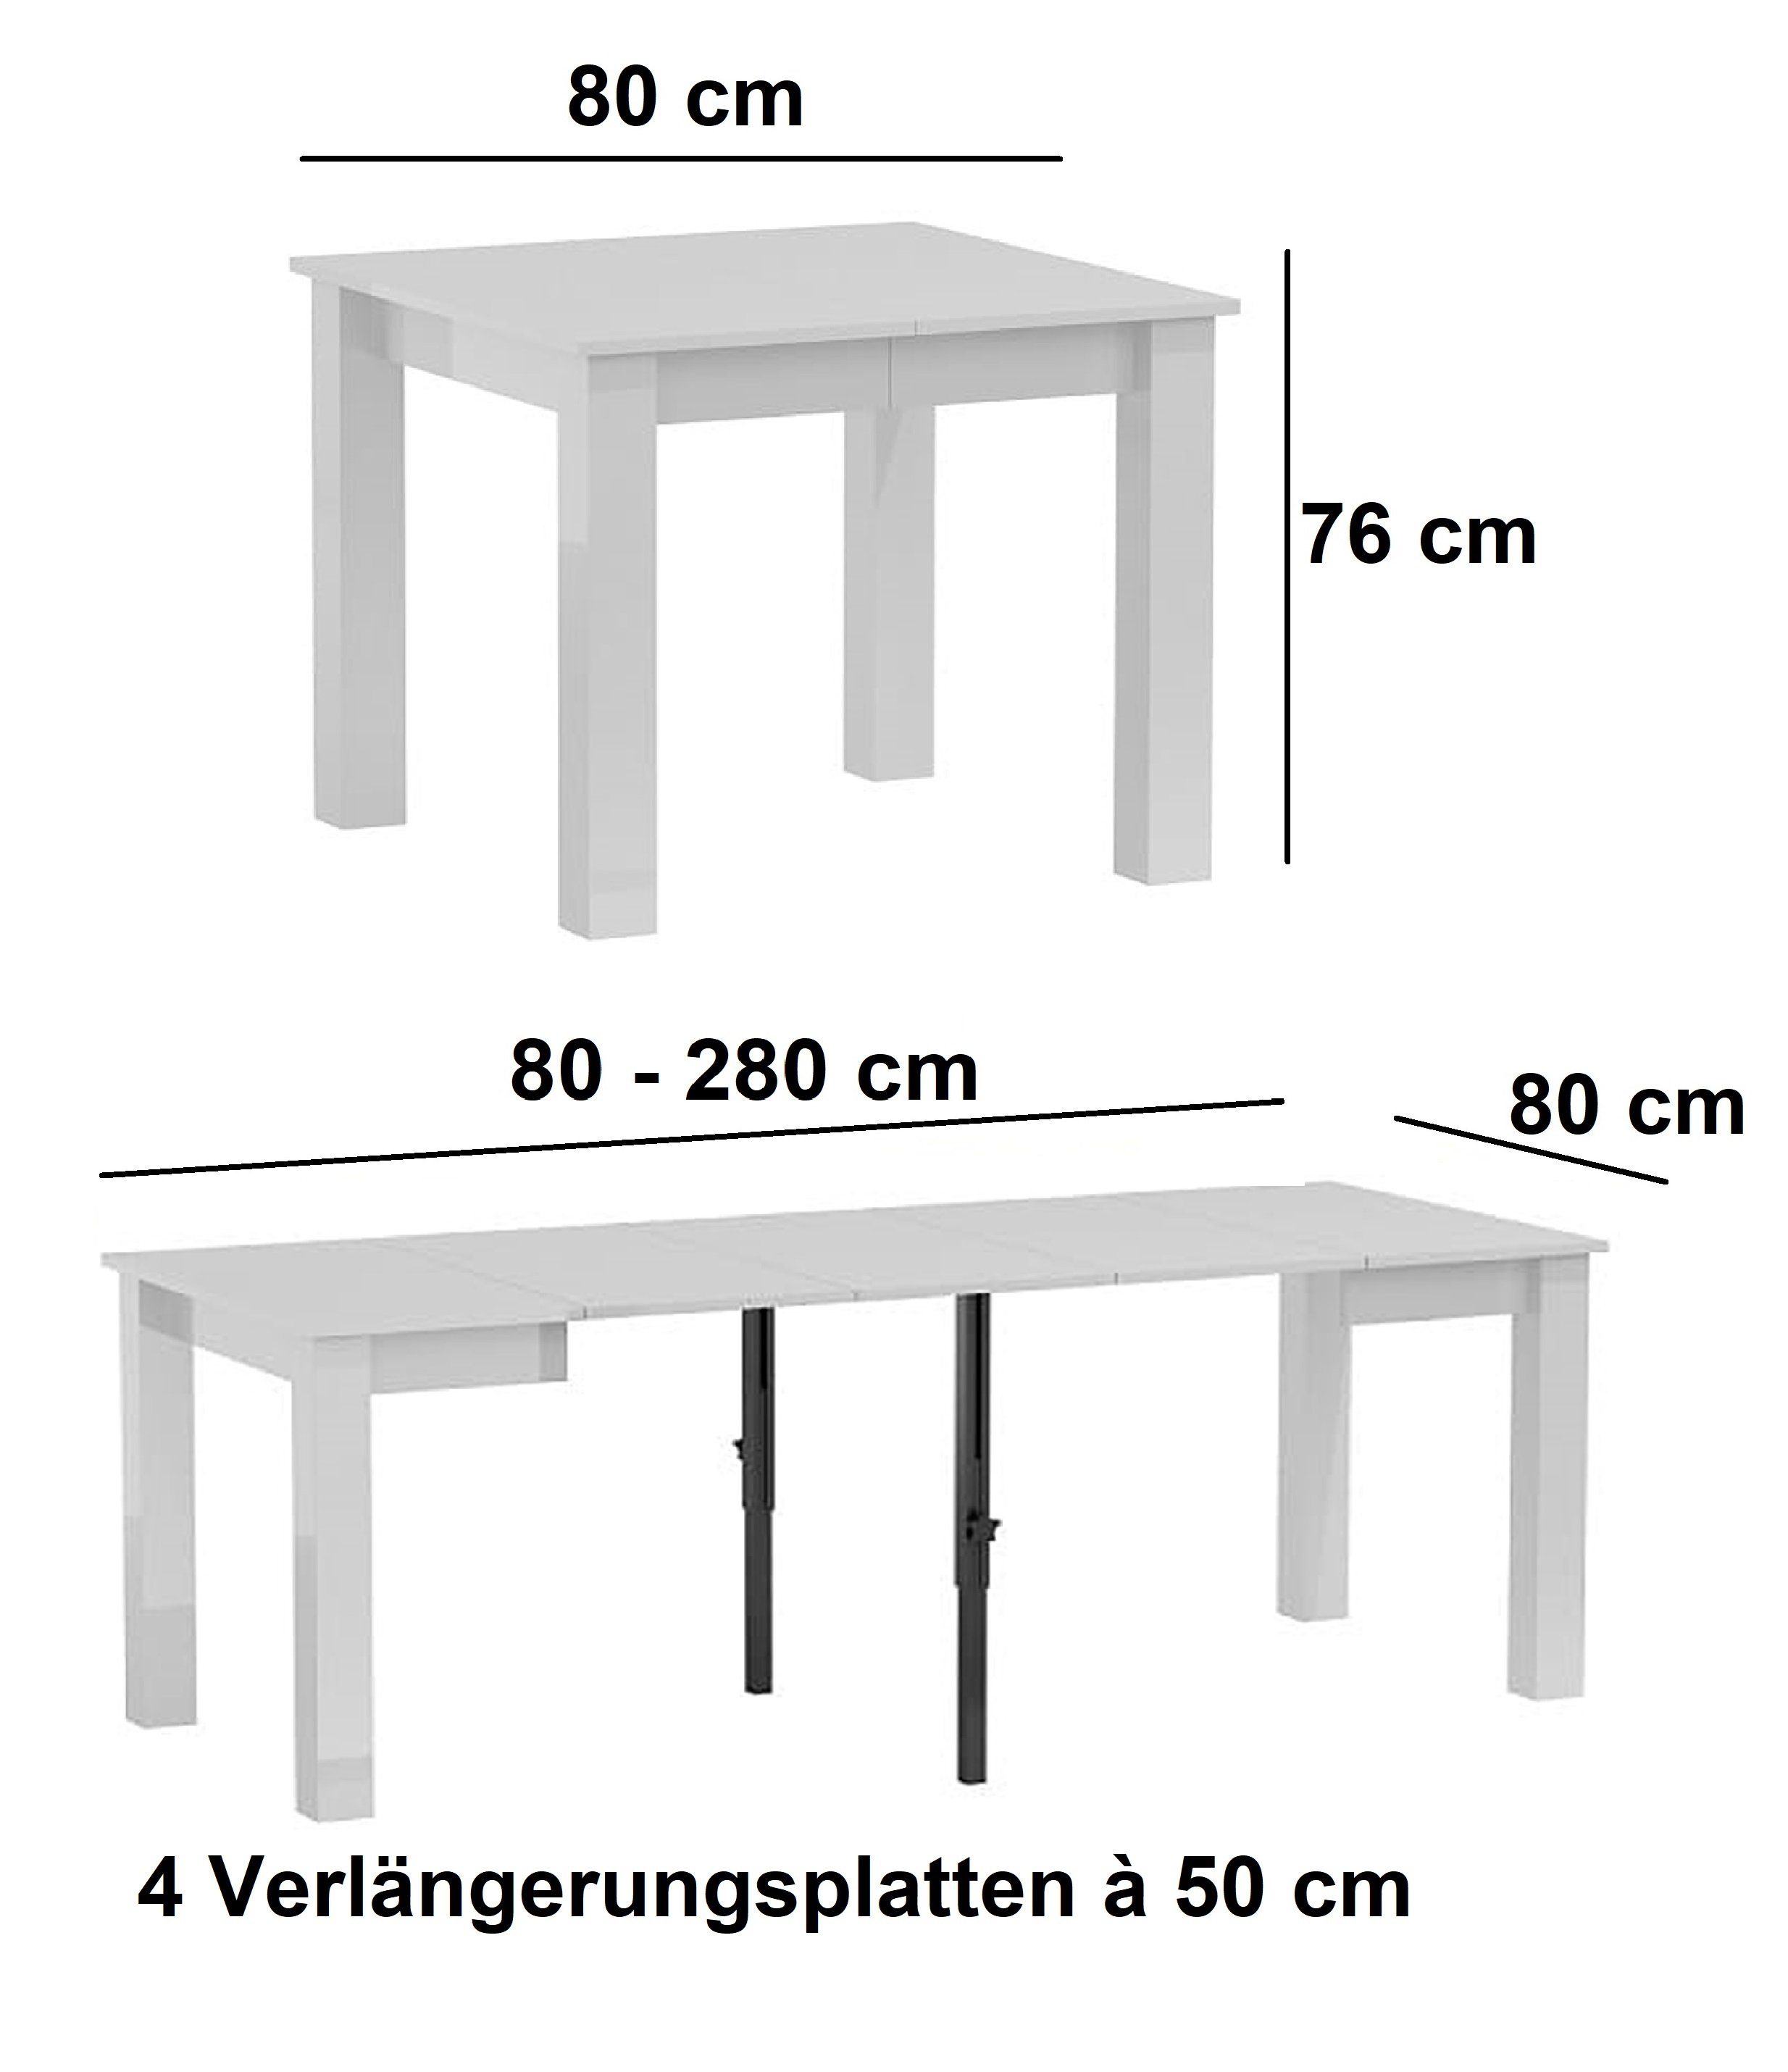 designimpex Esstisch Design Esstisch DA-444 Esszimmer Hochglanz 280 Weiß 80 cm Tisch bis ausziehbar